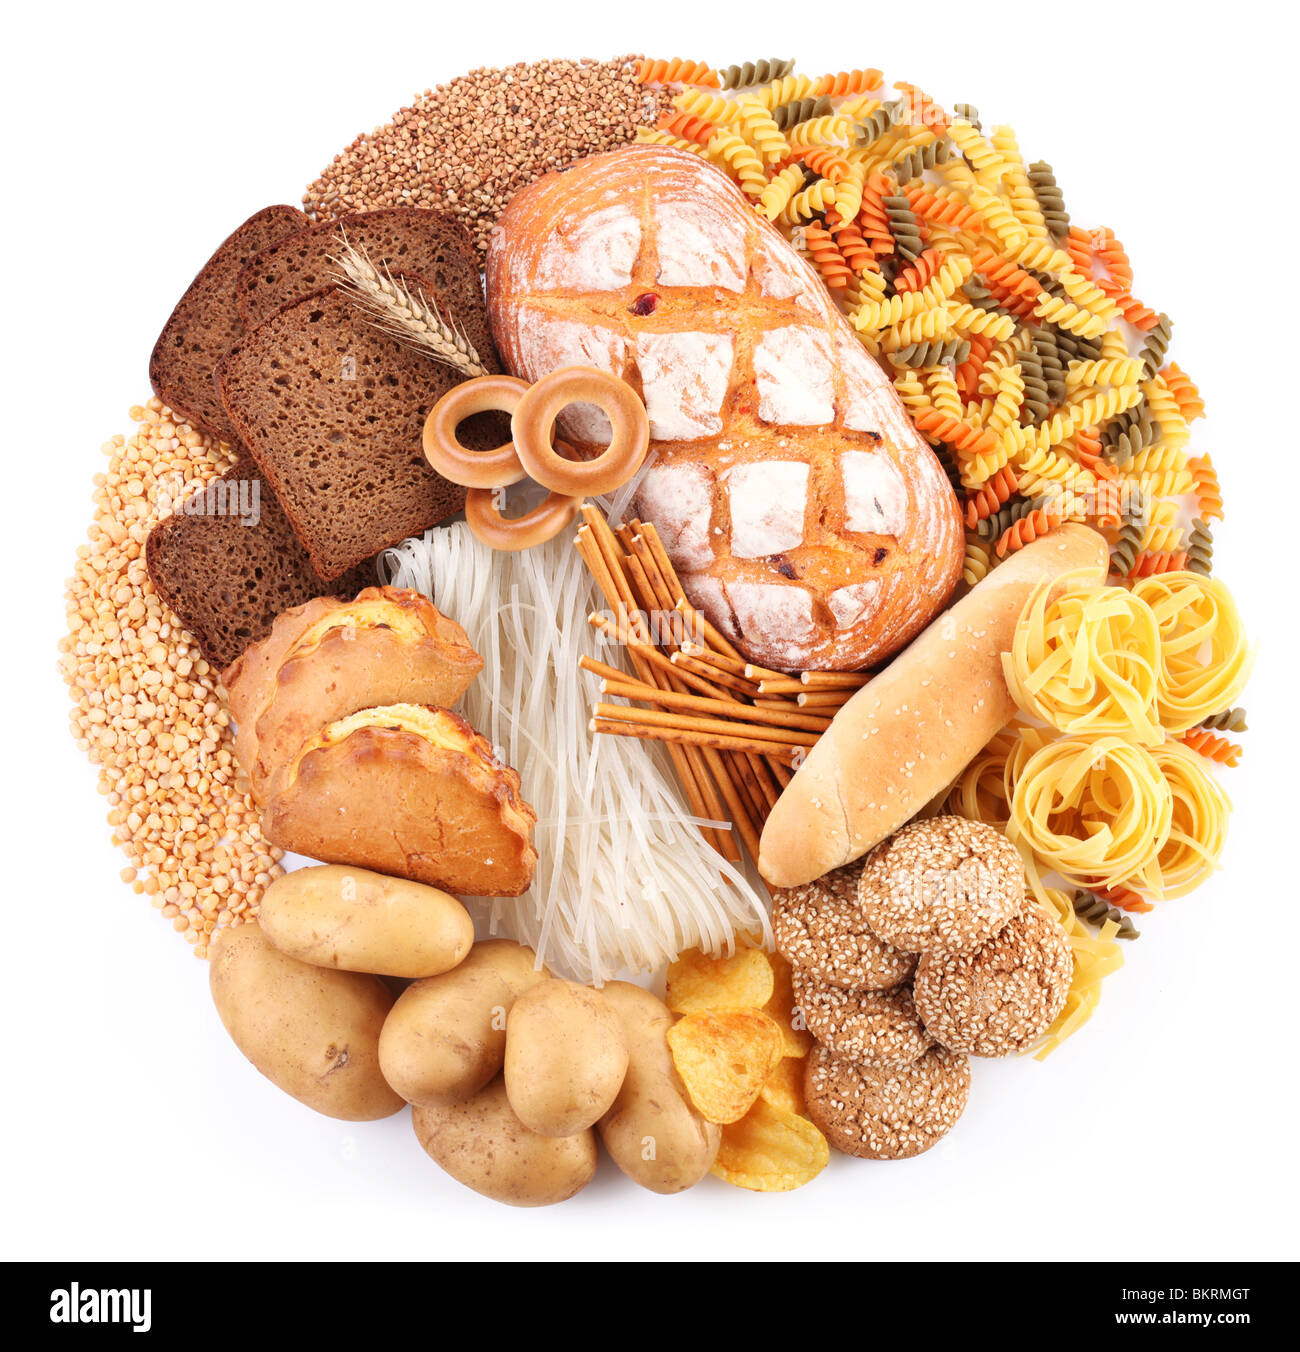 Pane e prodotti da forno in forma di un cerchio. Isolato su sfondo bianco. Foto Stock